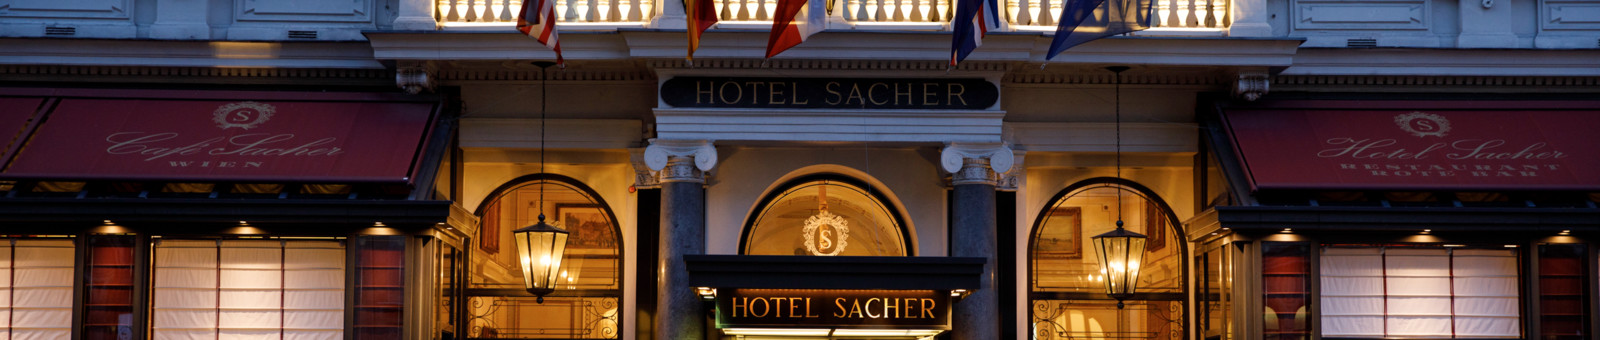     Hotel Sacher Vienna, Rigaud front 